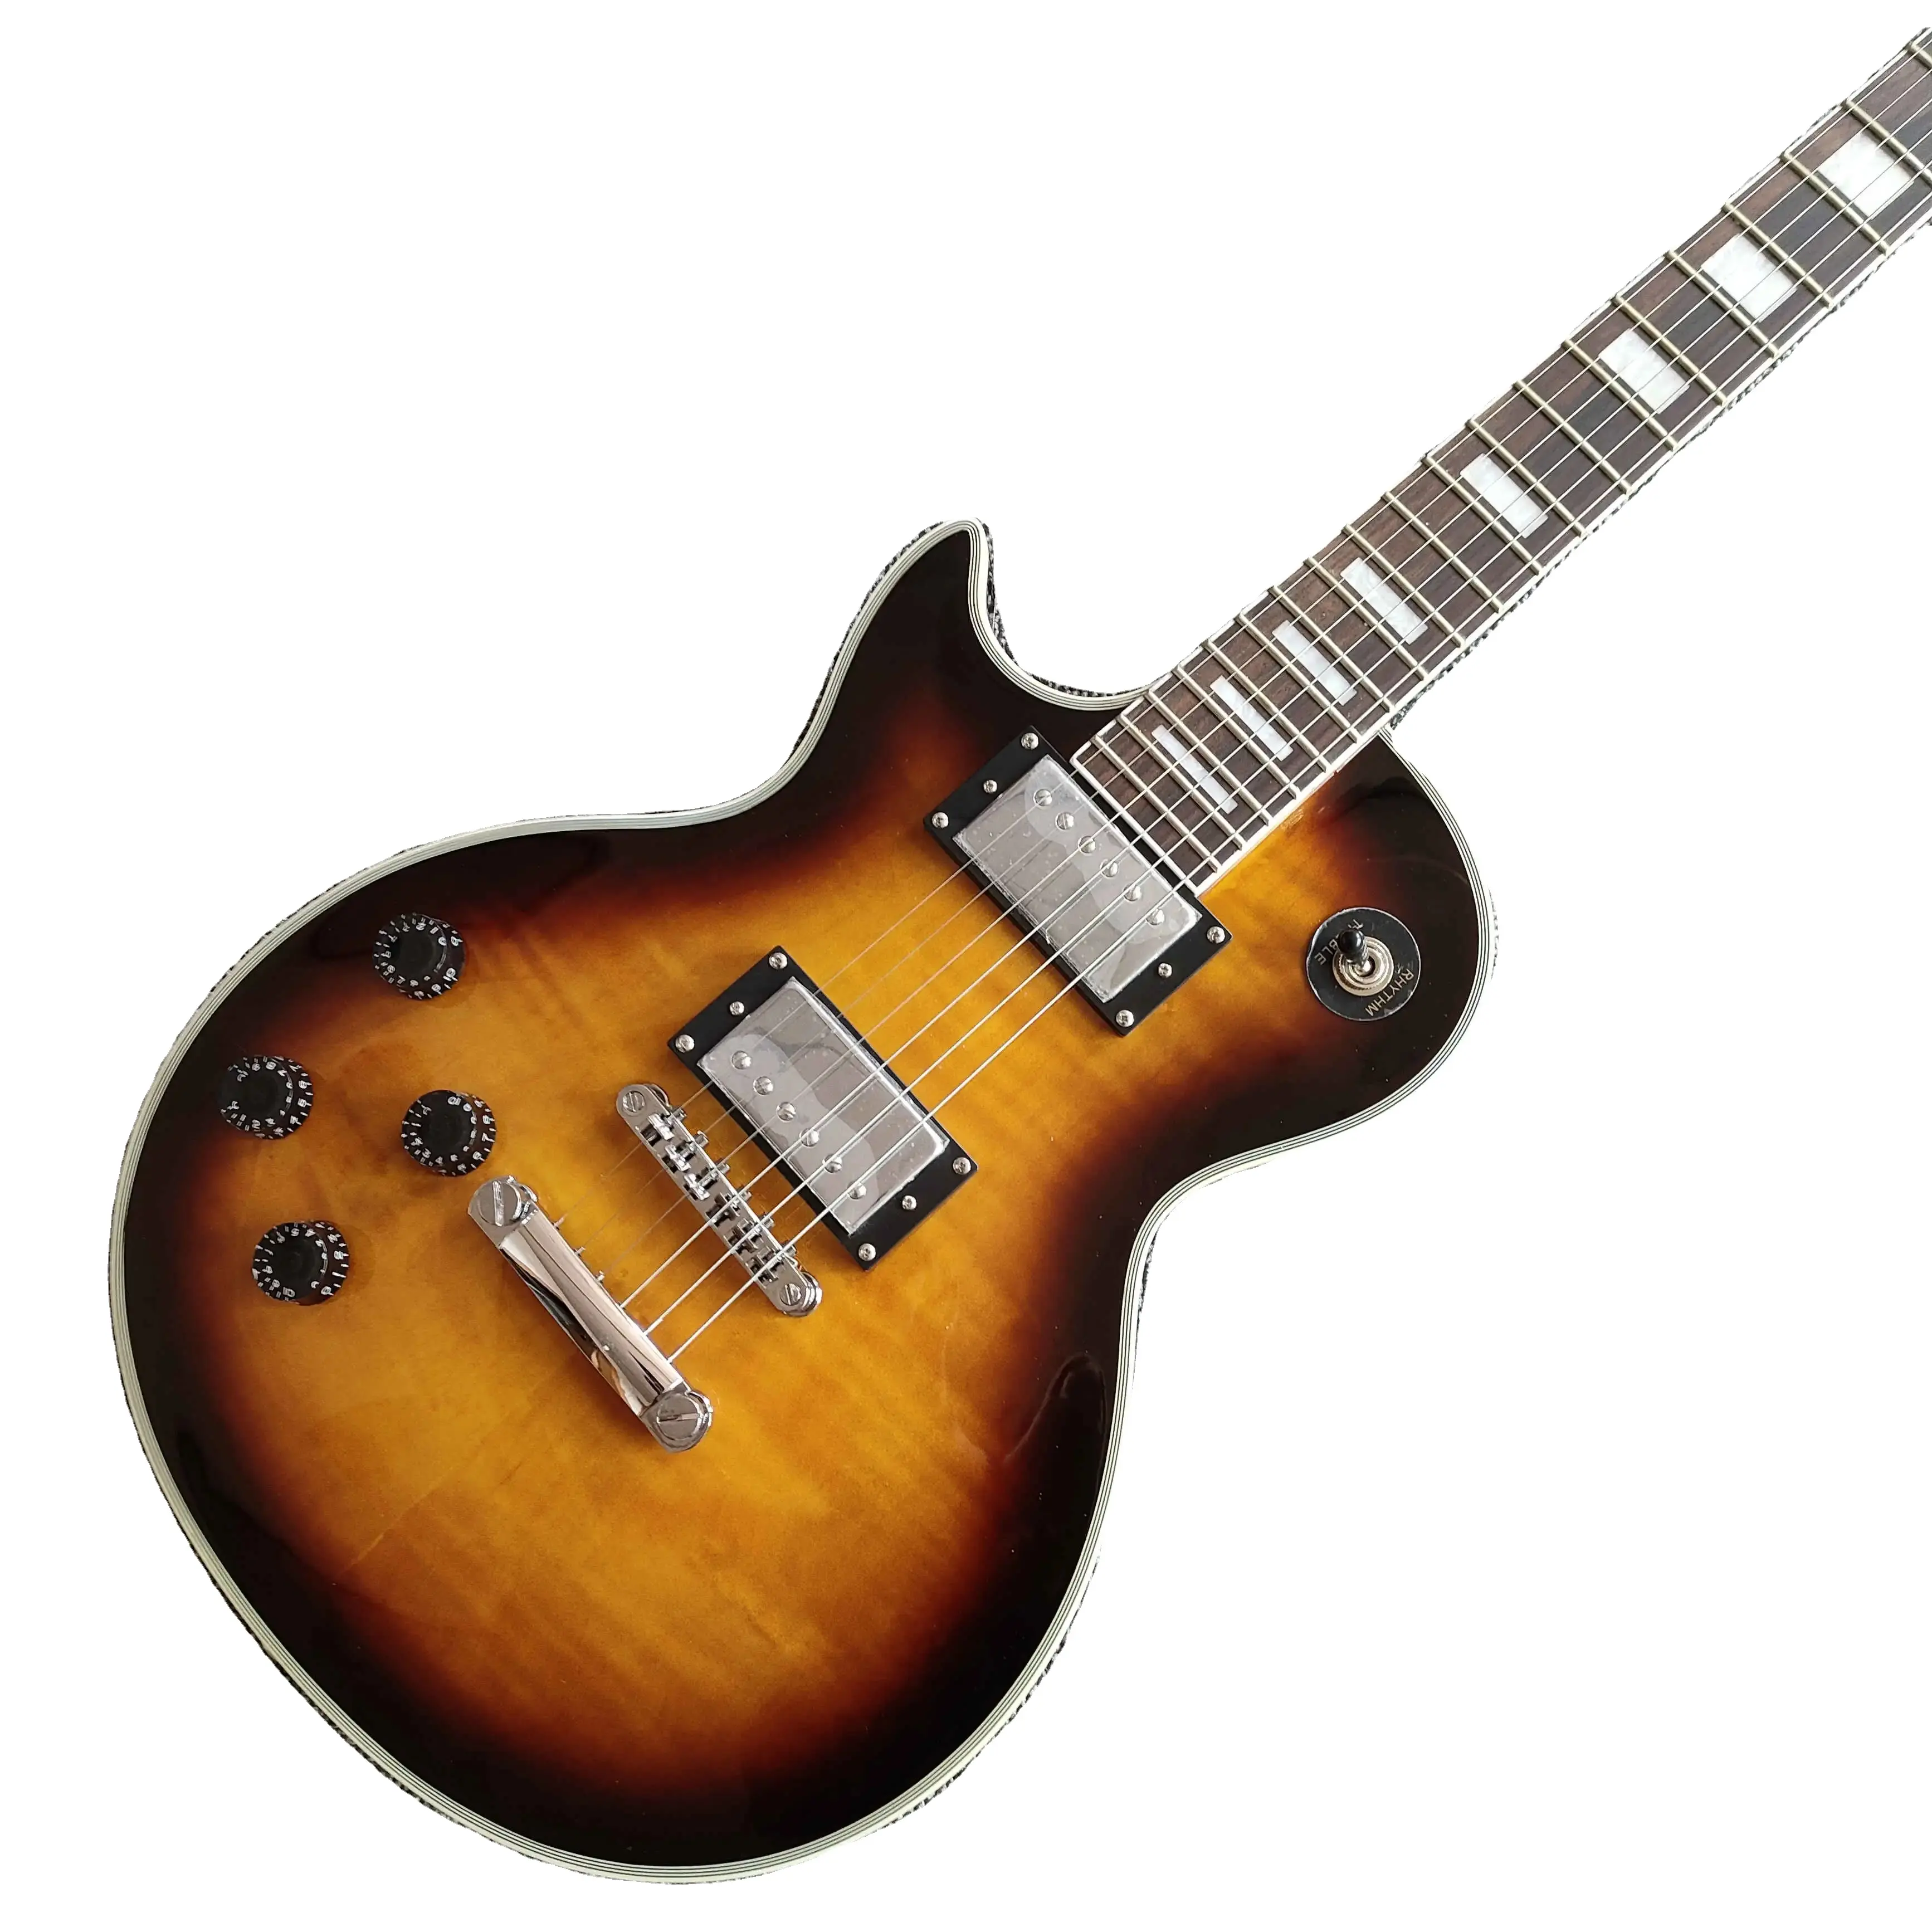 真新しいローズウッド指板6弦左利き用透明ブラウンエレキギター在庫あり